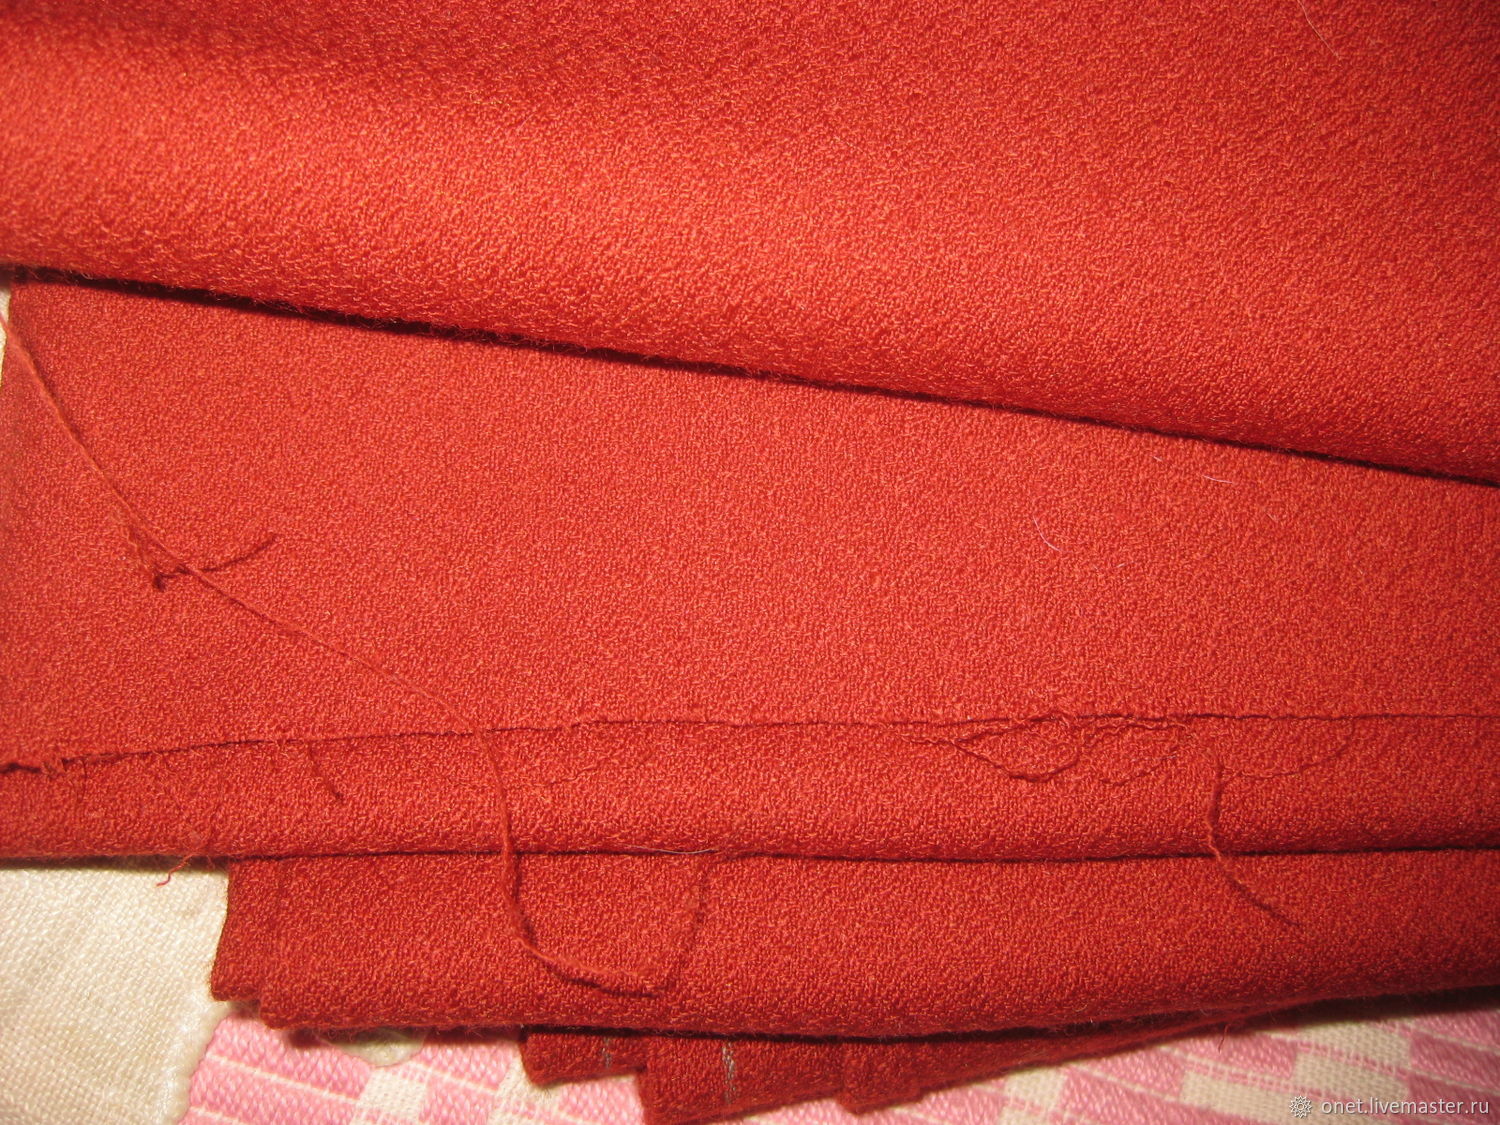 Старинная плотная тяжелая шерстяная ткань употреблявшаяся для обивки мебели